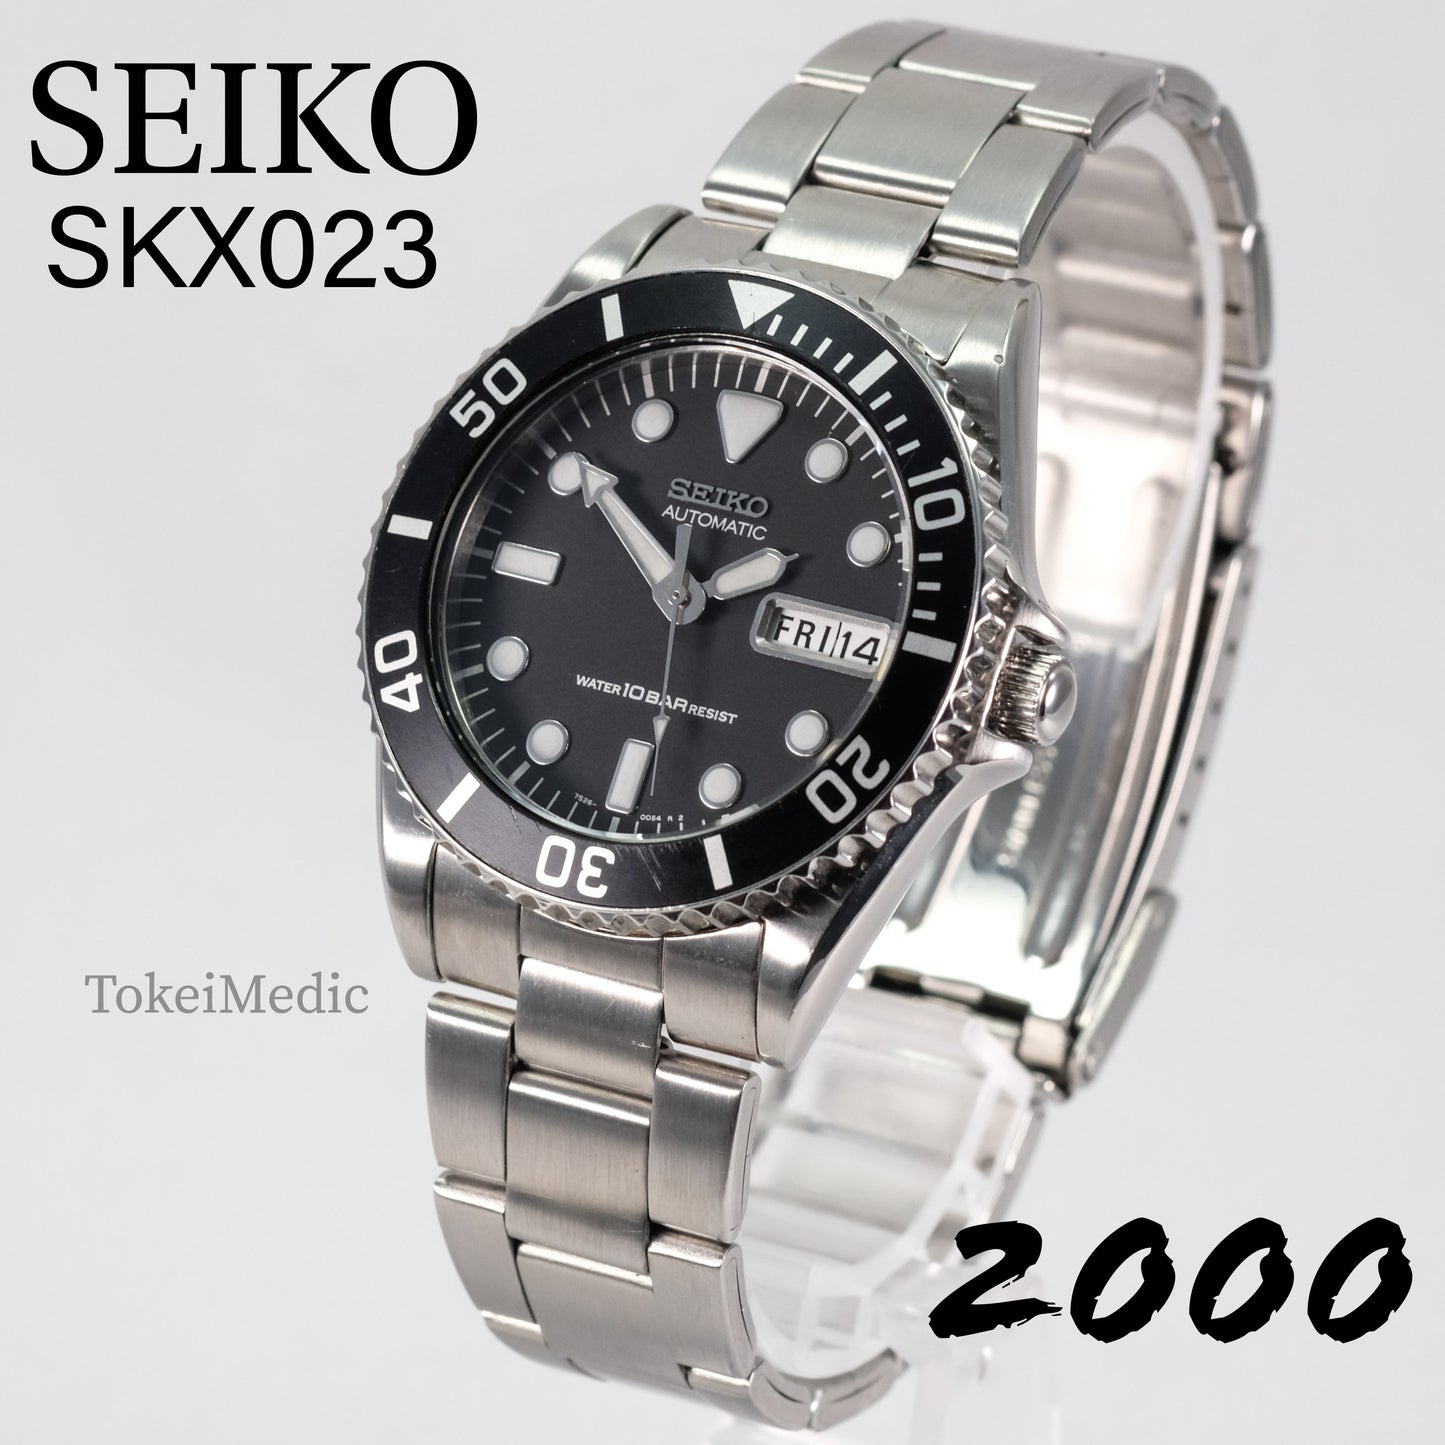 2000 Seiko SKX023 7S26-0050